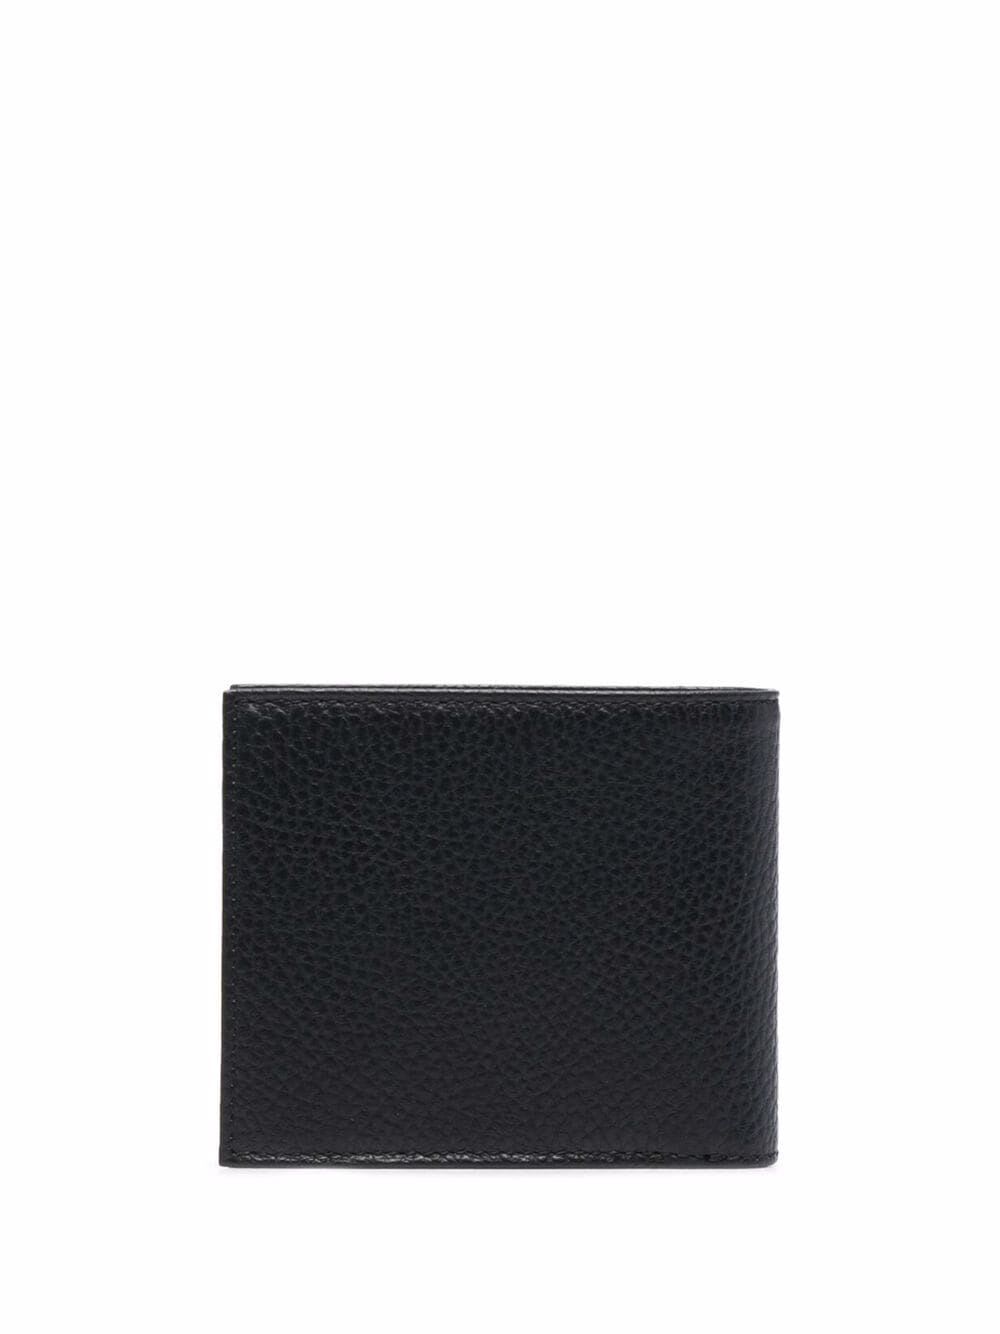 Shop Emporio Armani Bi-fold Wallet In Lt Grey Black